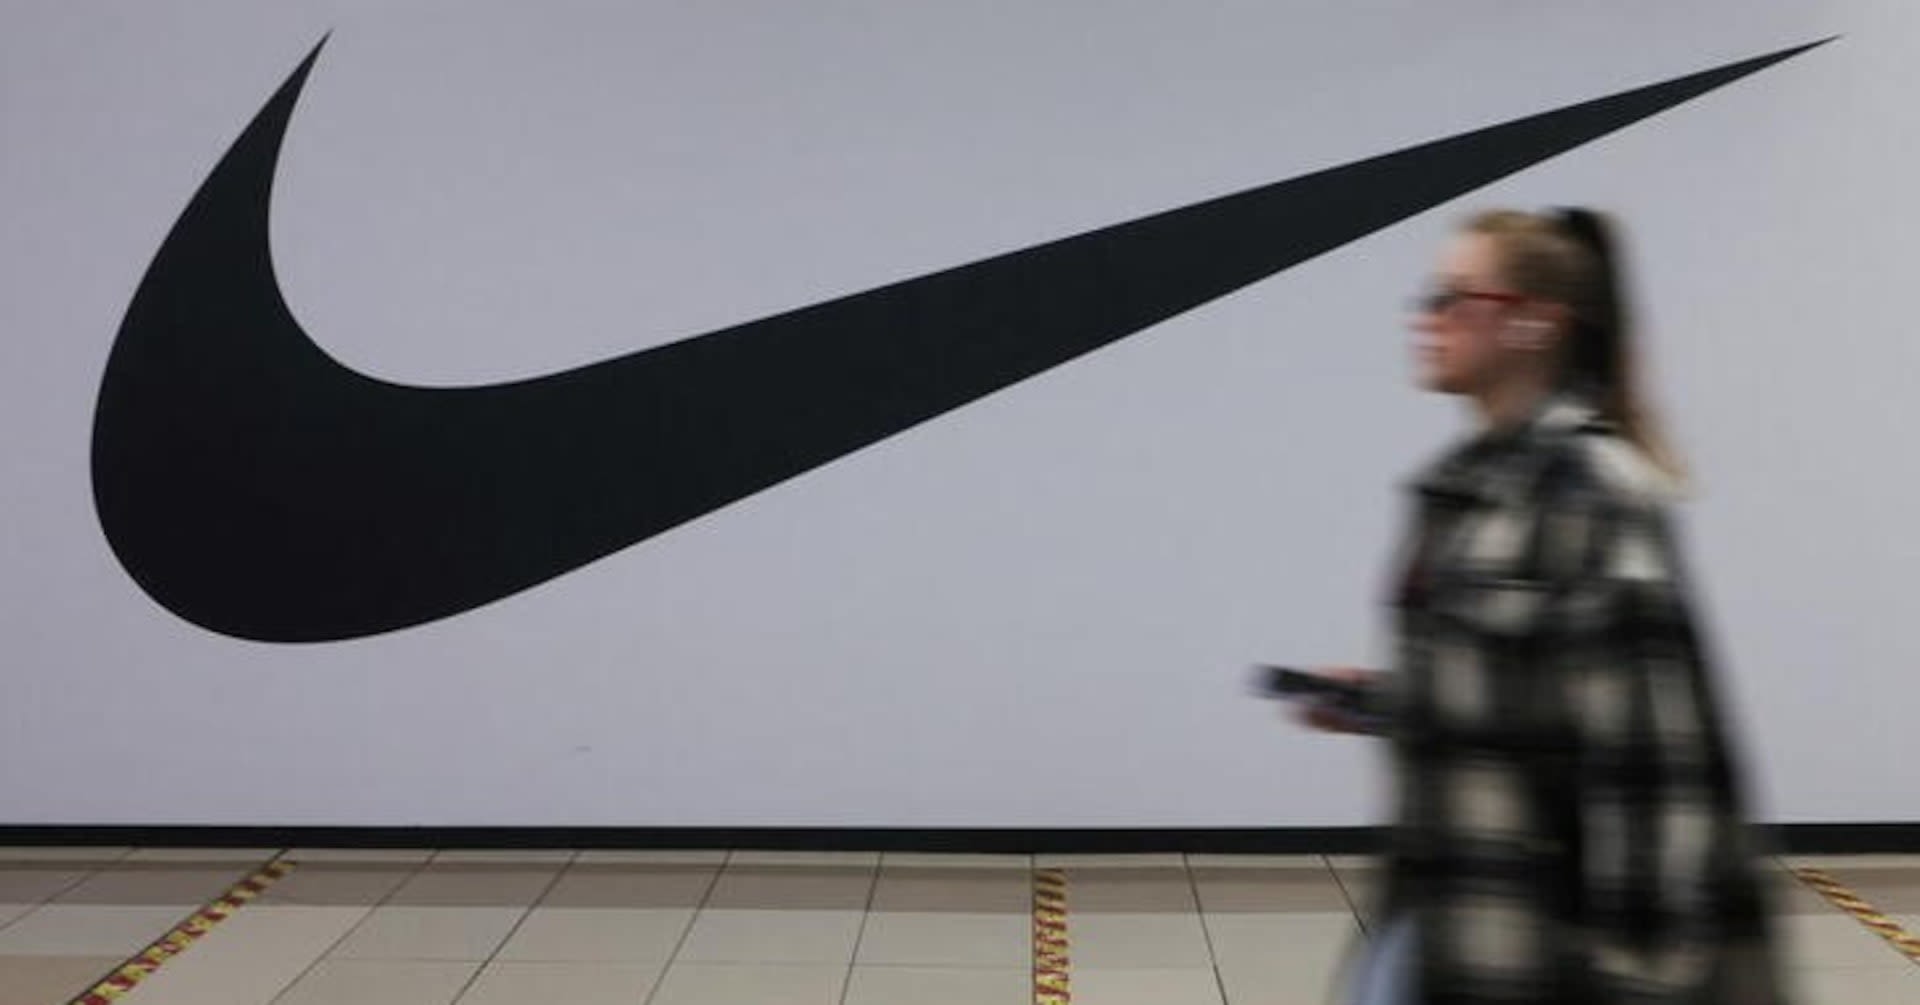 Nike settles trademark case against BAPE over shoe designs